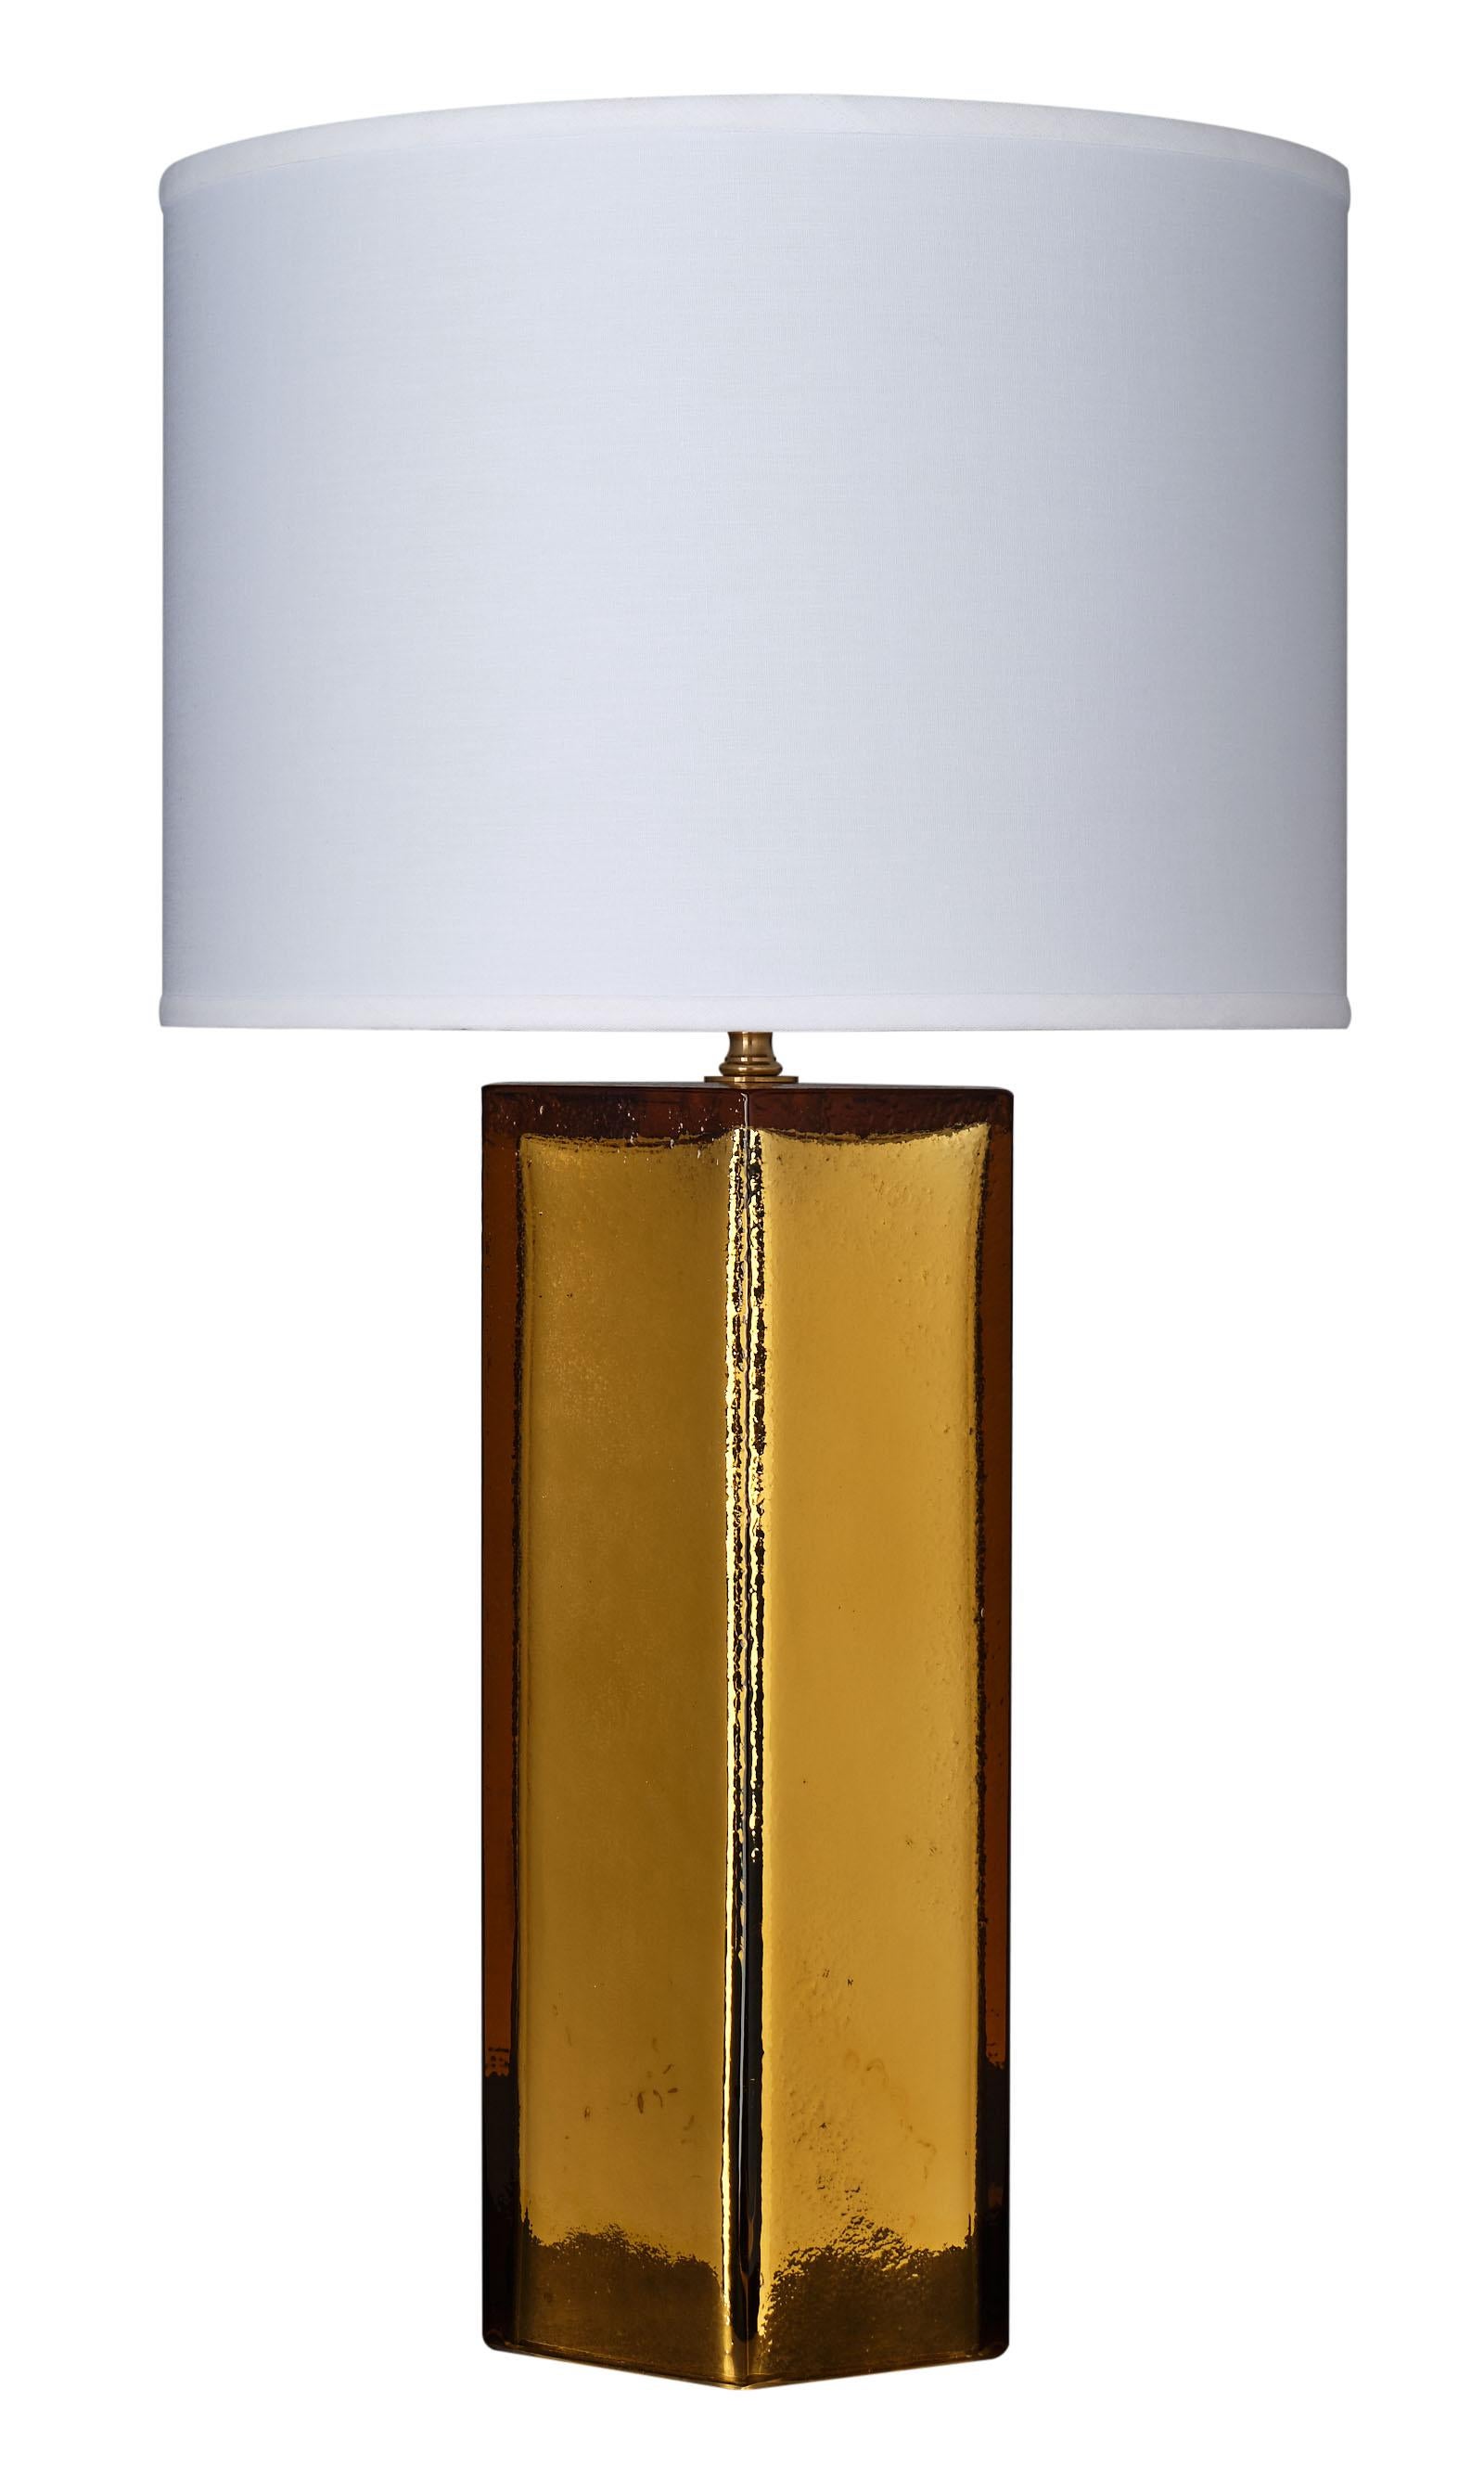 Pagliesco Murano Glaslampen in sechseckiger Form. Wir lieben den schönen Ton des mundgeblasenen Glases - pagliesco in der Farbe und gespiegelt auf der Innenseite für einen schönen metallischen Glanz. Dieses ausgezeichnete Paar ist vom Glasmeister